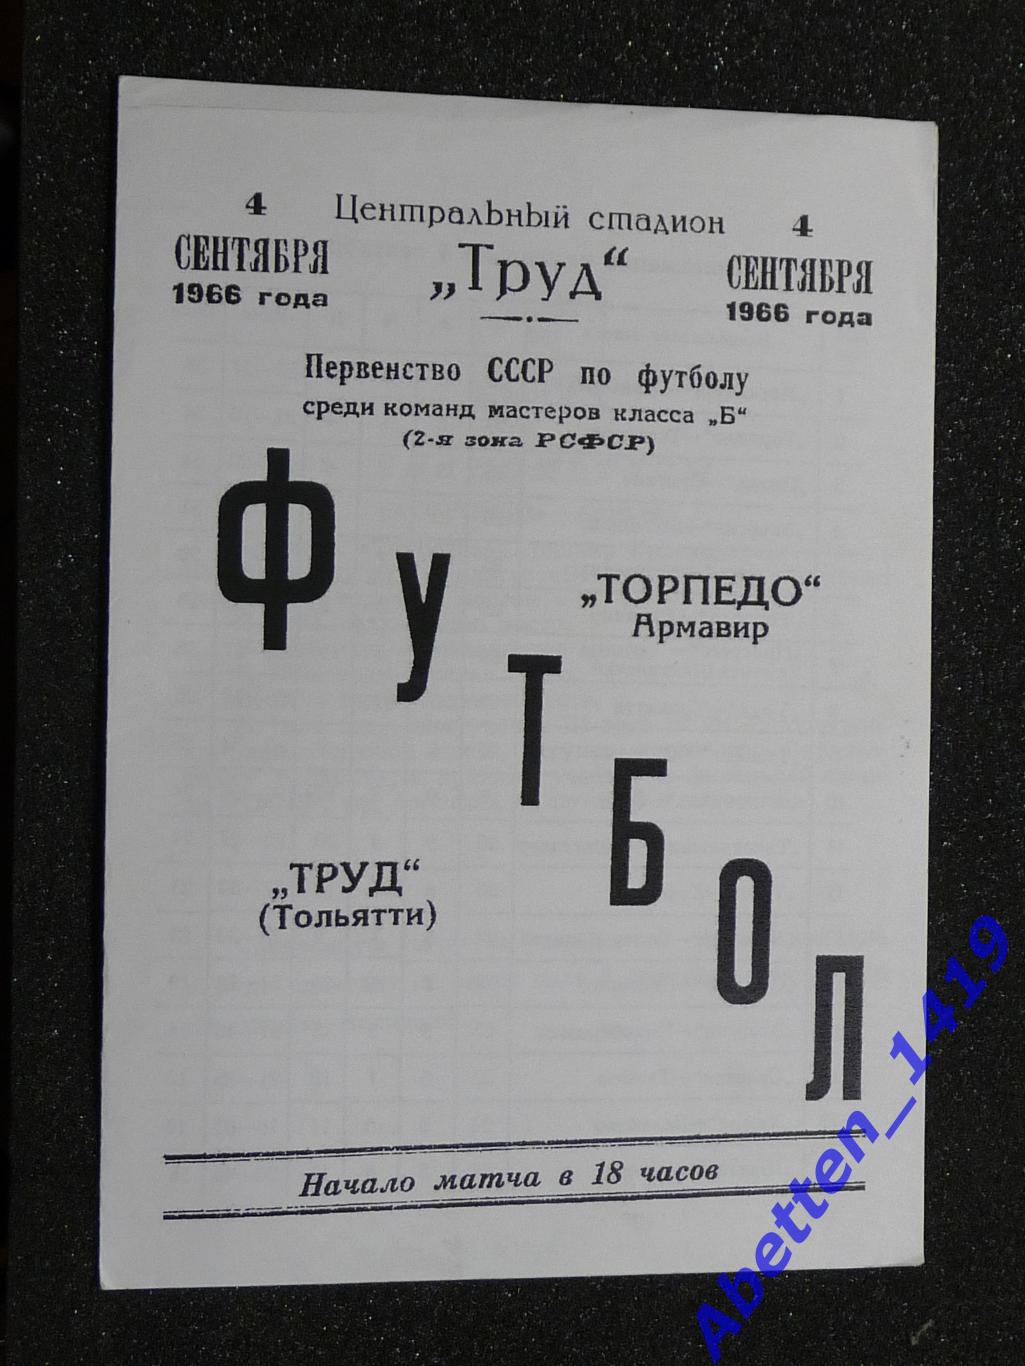 Программка Труд Тольятти-Торпеда Армавир. 1966г.